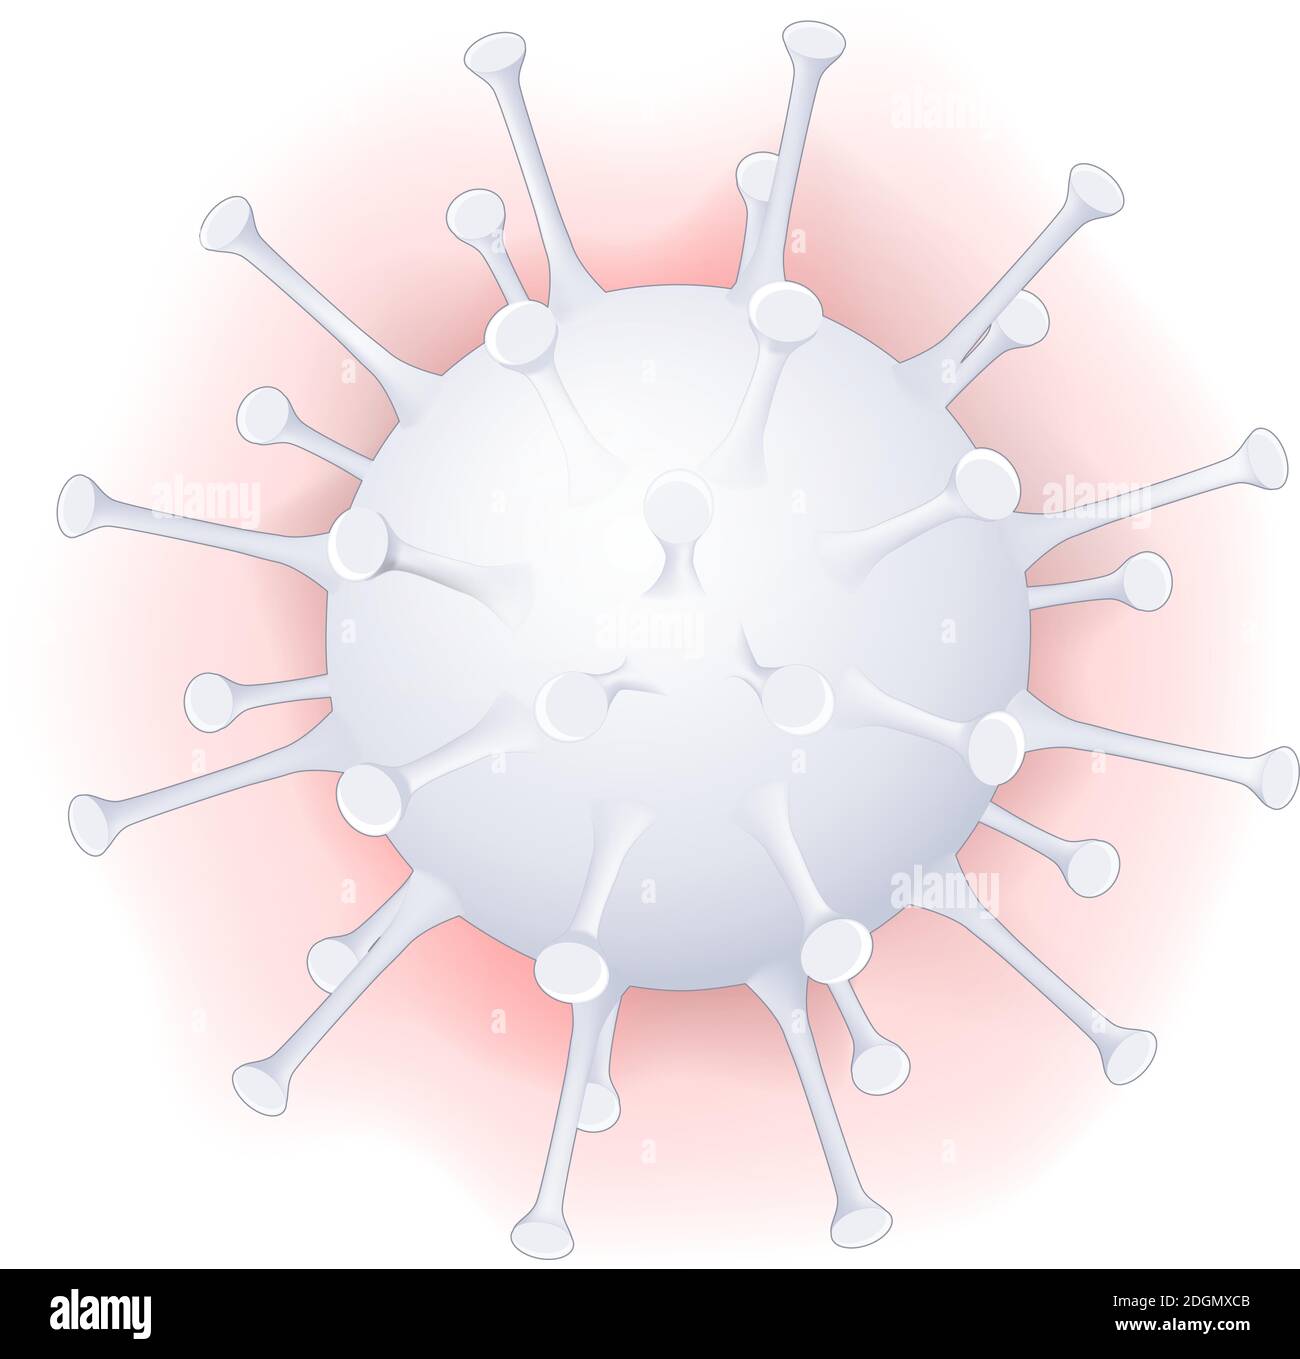 Coronavirus. COVID-19, 2019-nCoV. Icône blanche. Éclosion de grippe. Pandémie de grippe. Illustration vectorielle de virion Illustration de Vecteur